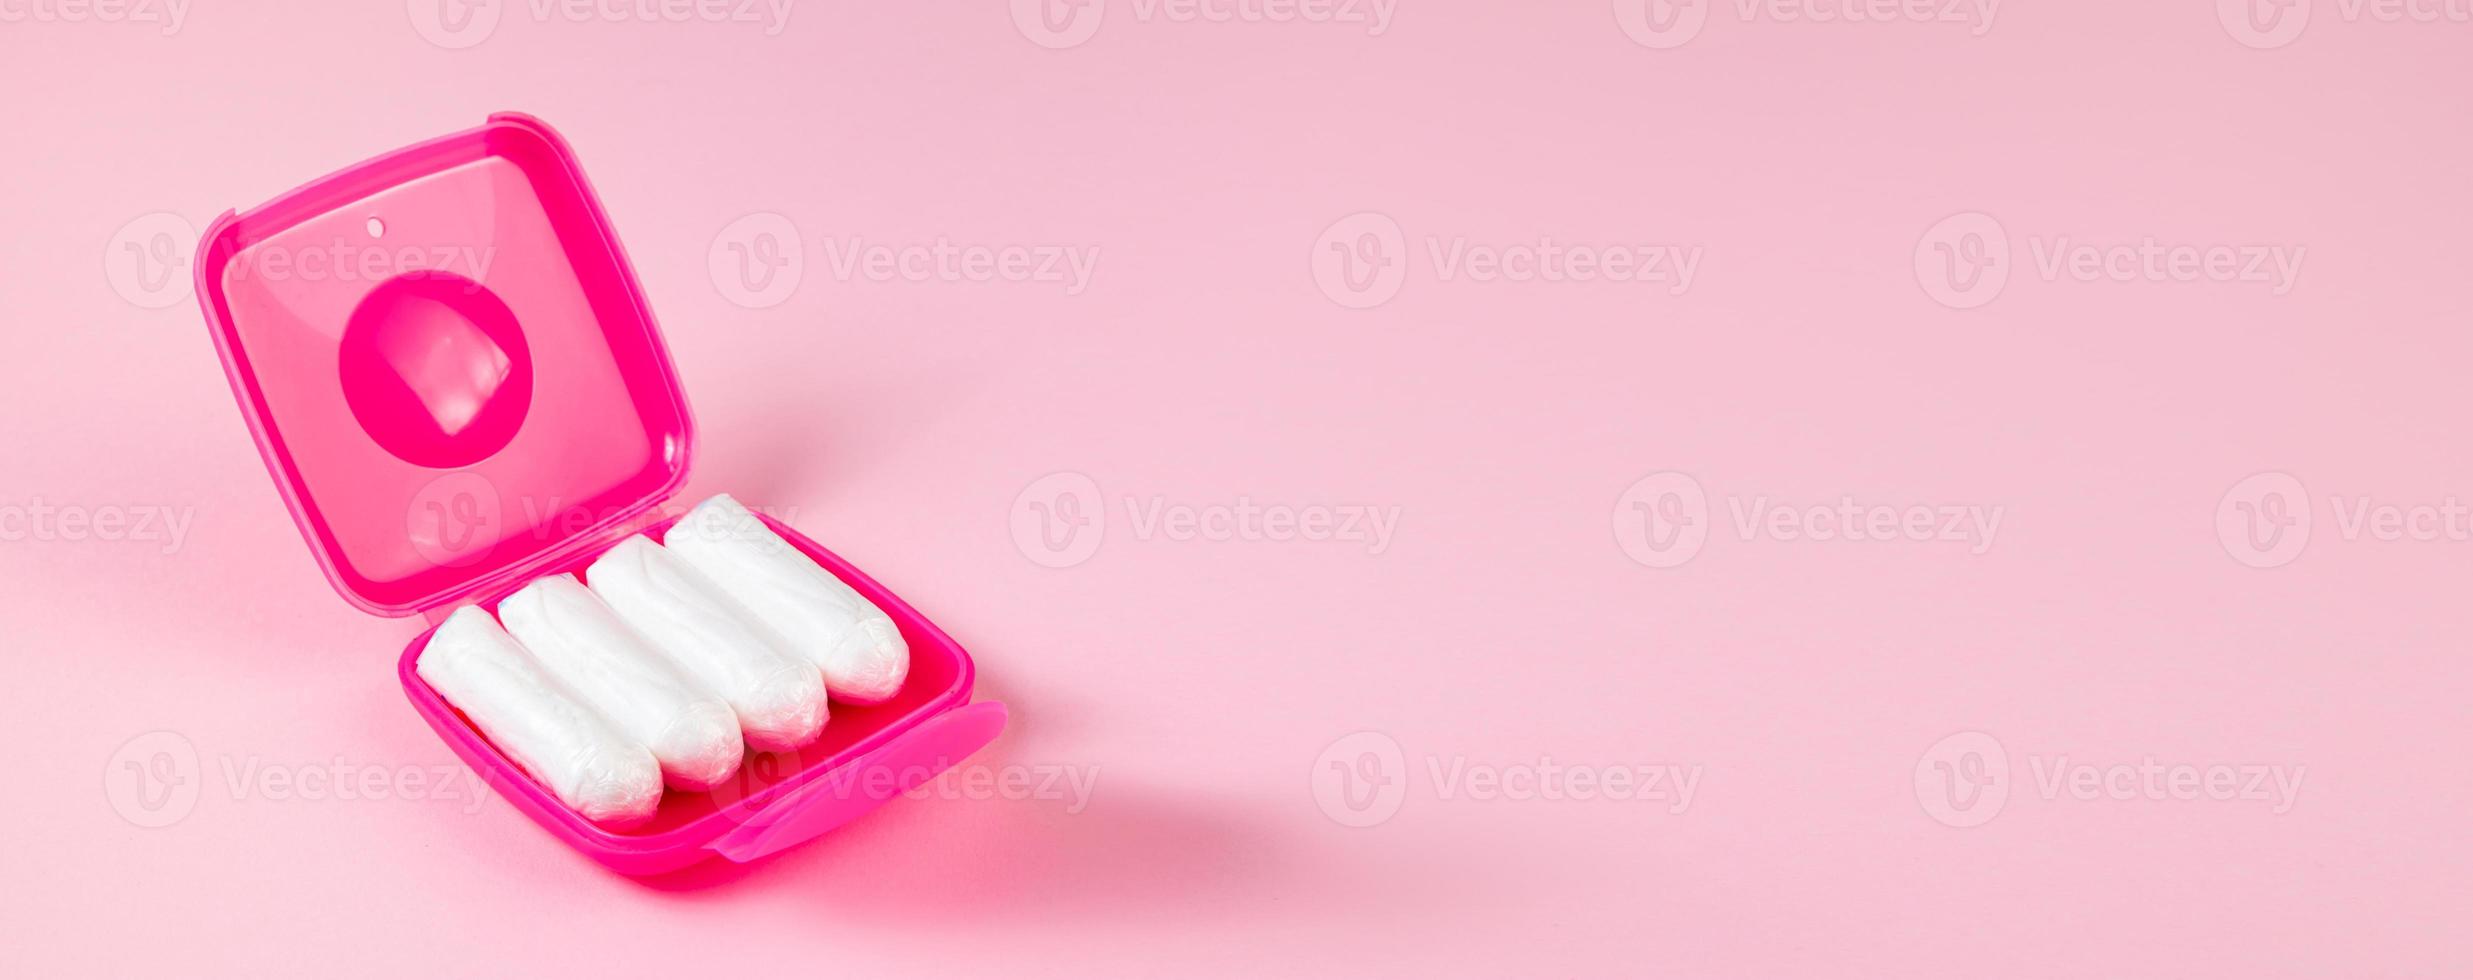 tampons in roze doos. vrouwelijke hygiëneproducten op pastelachtergrond. foto